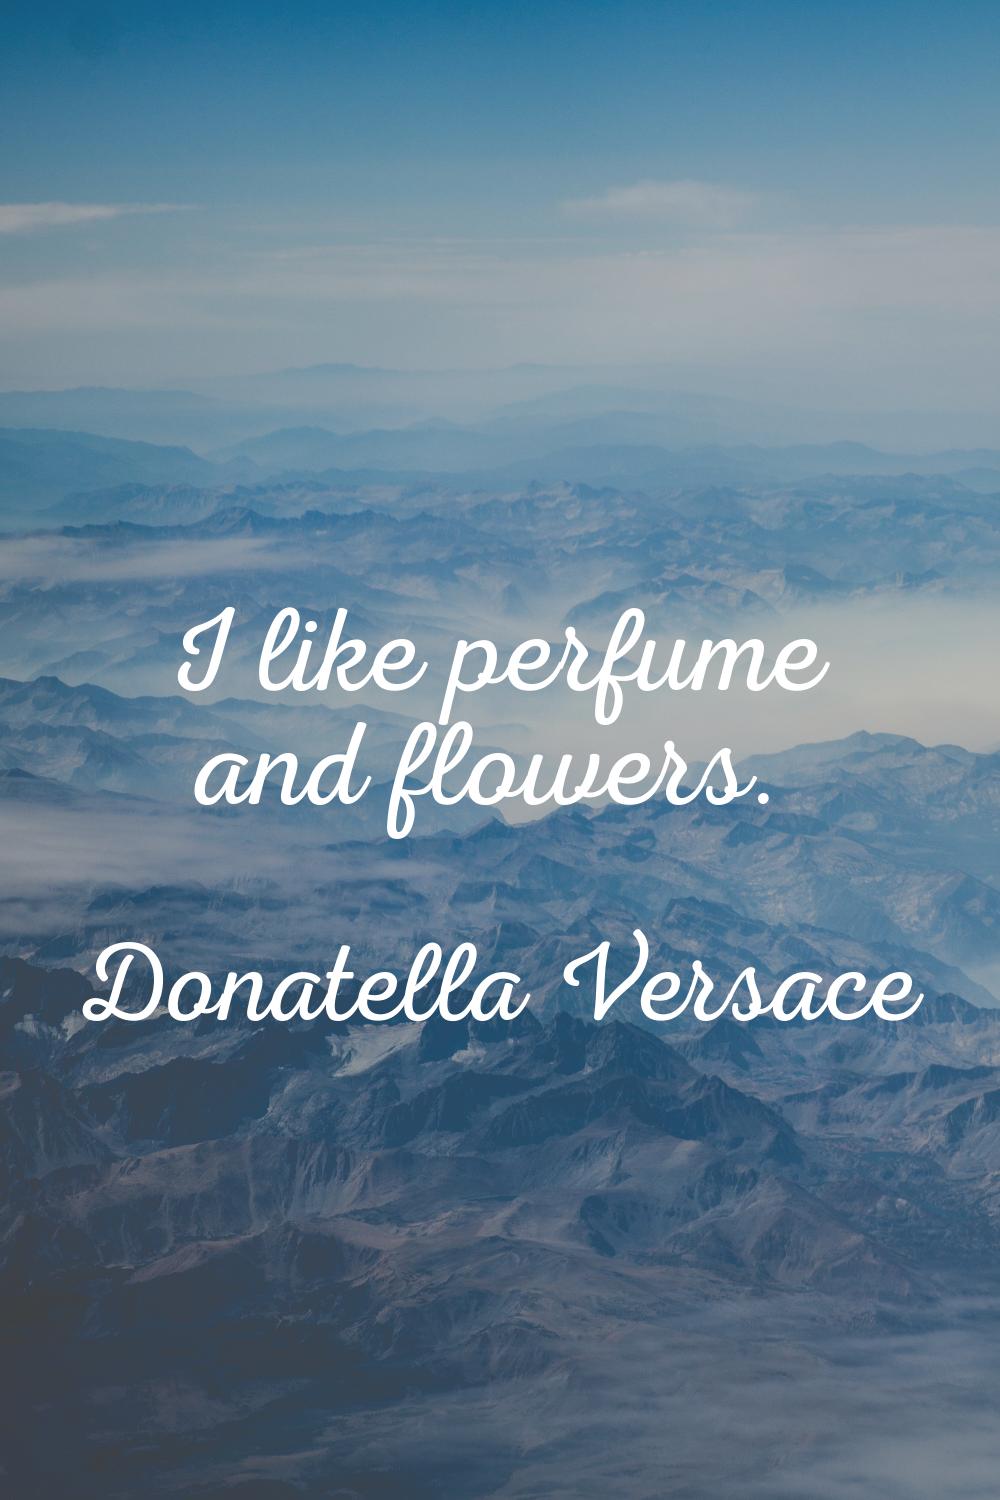 I like perfume and flowers.